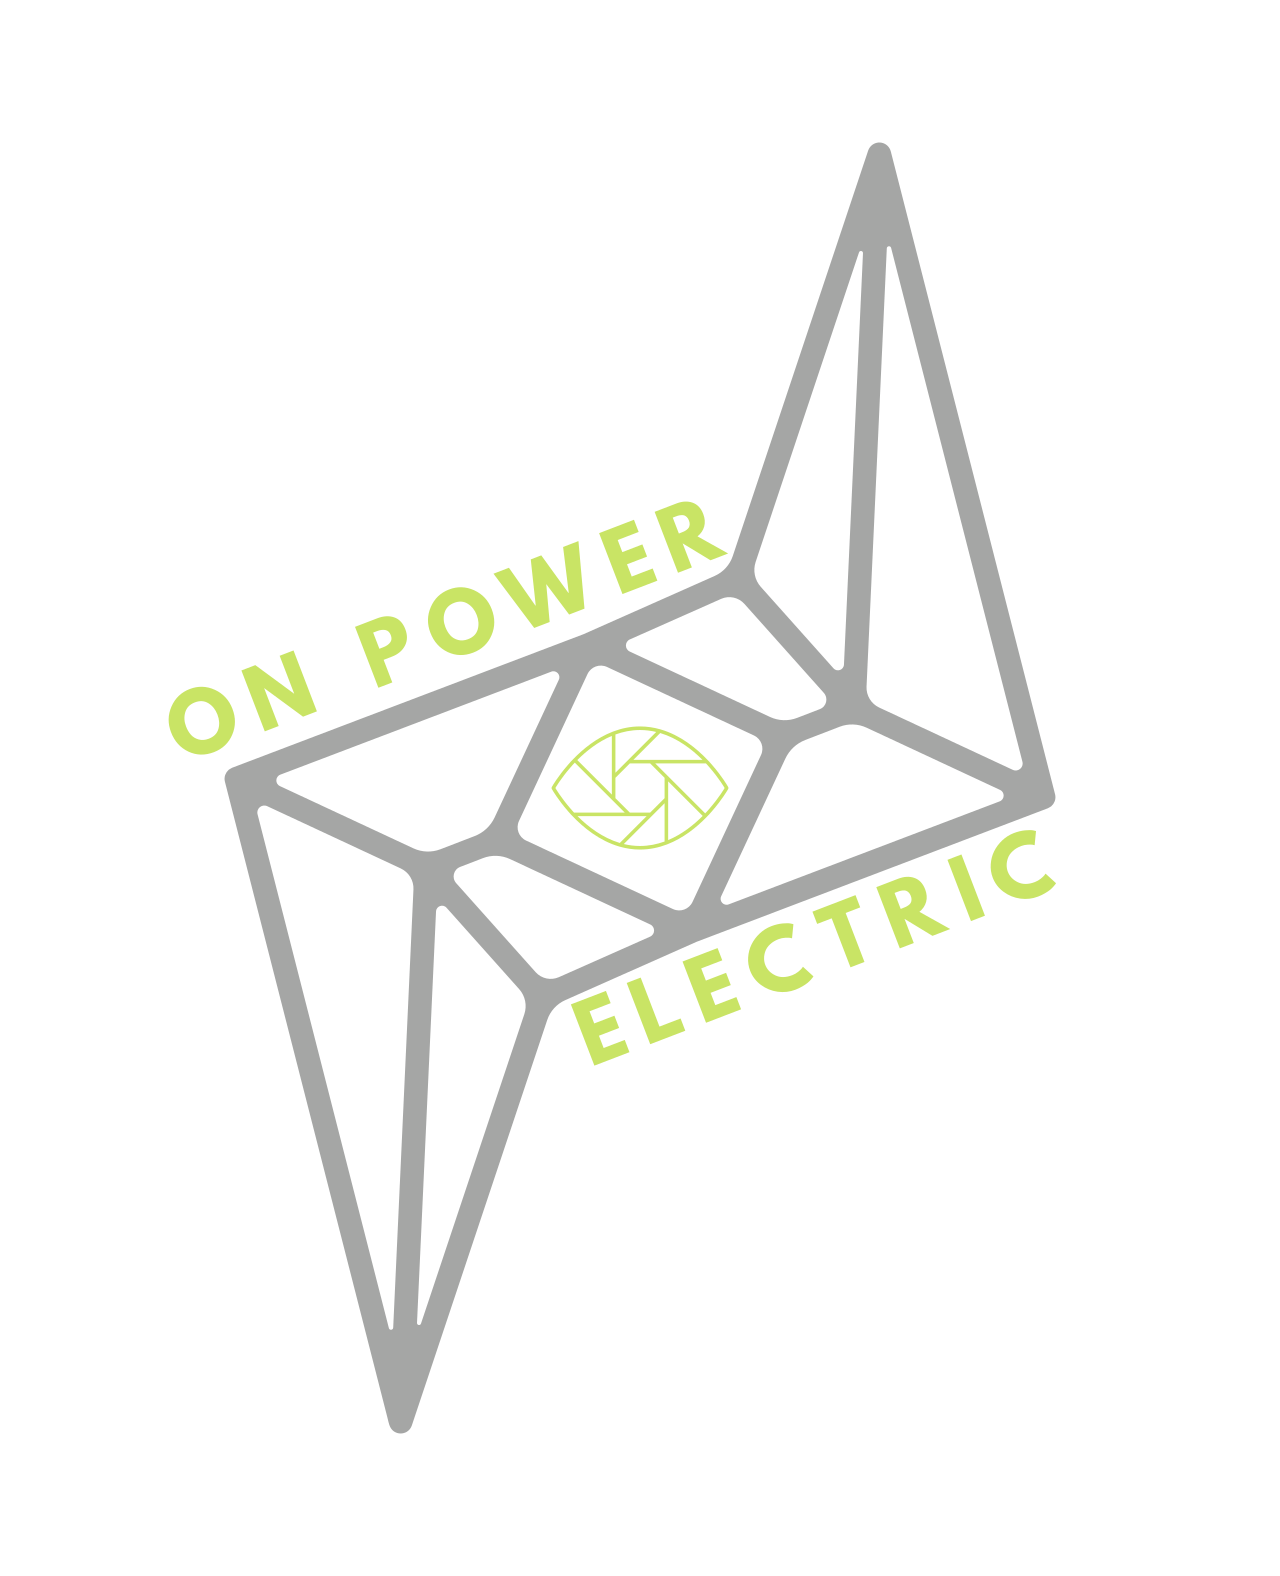 on power's logo